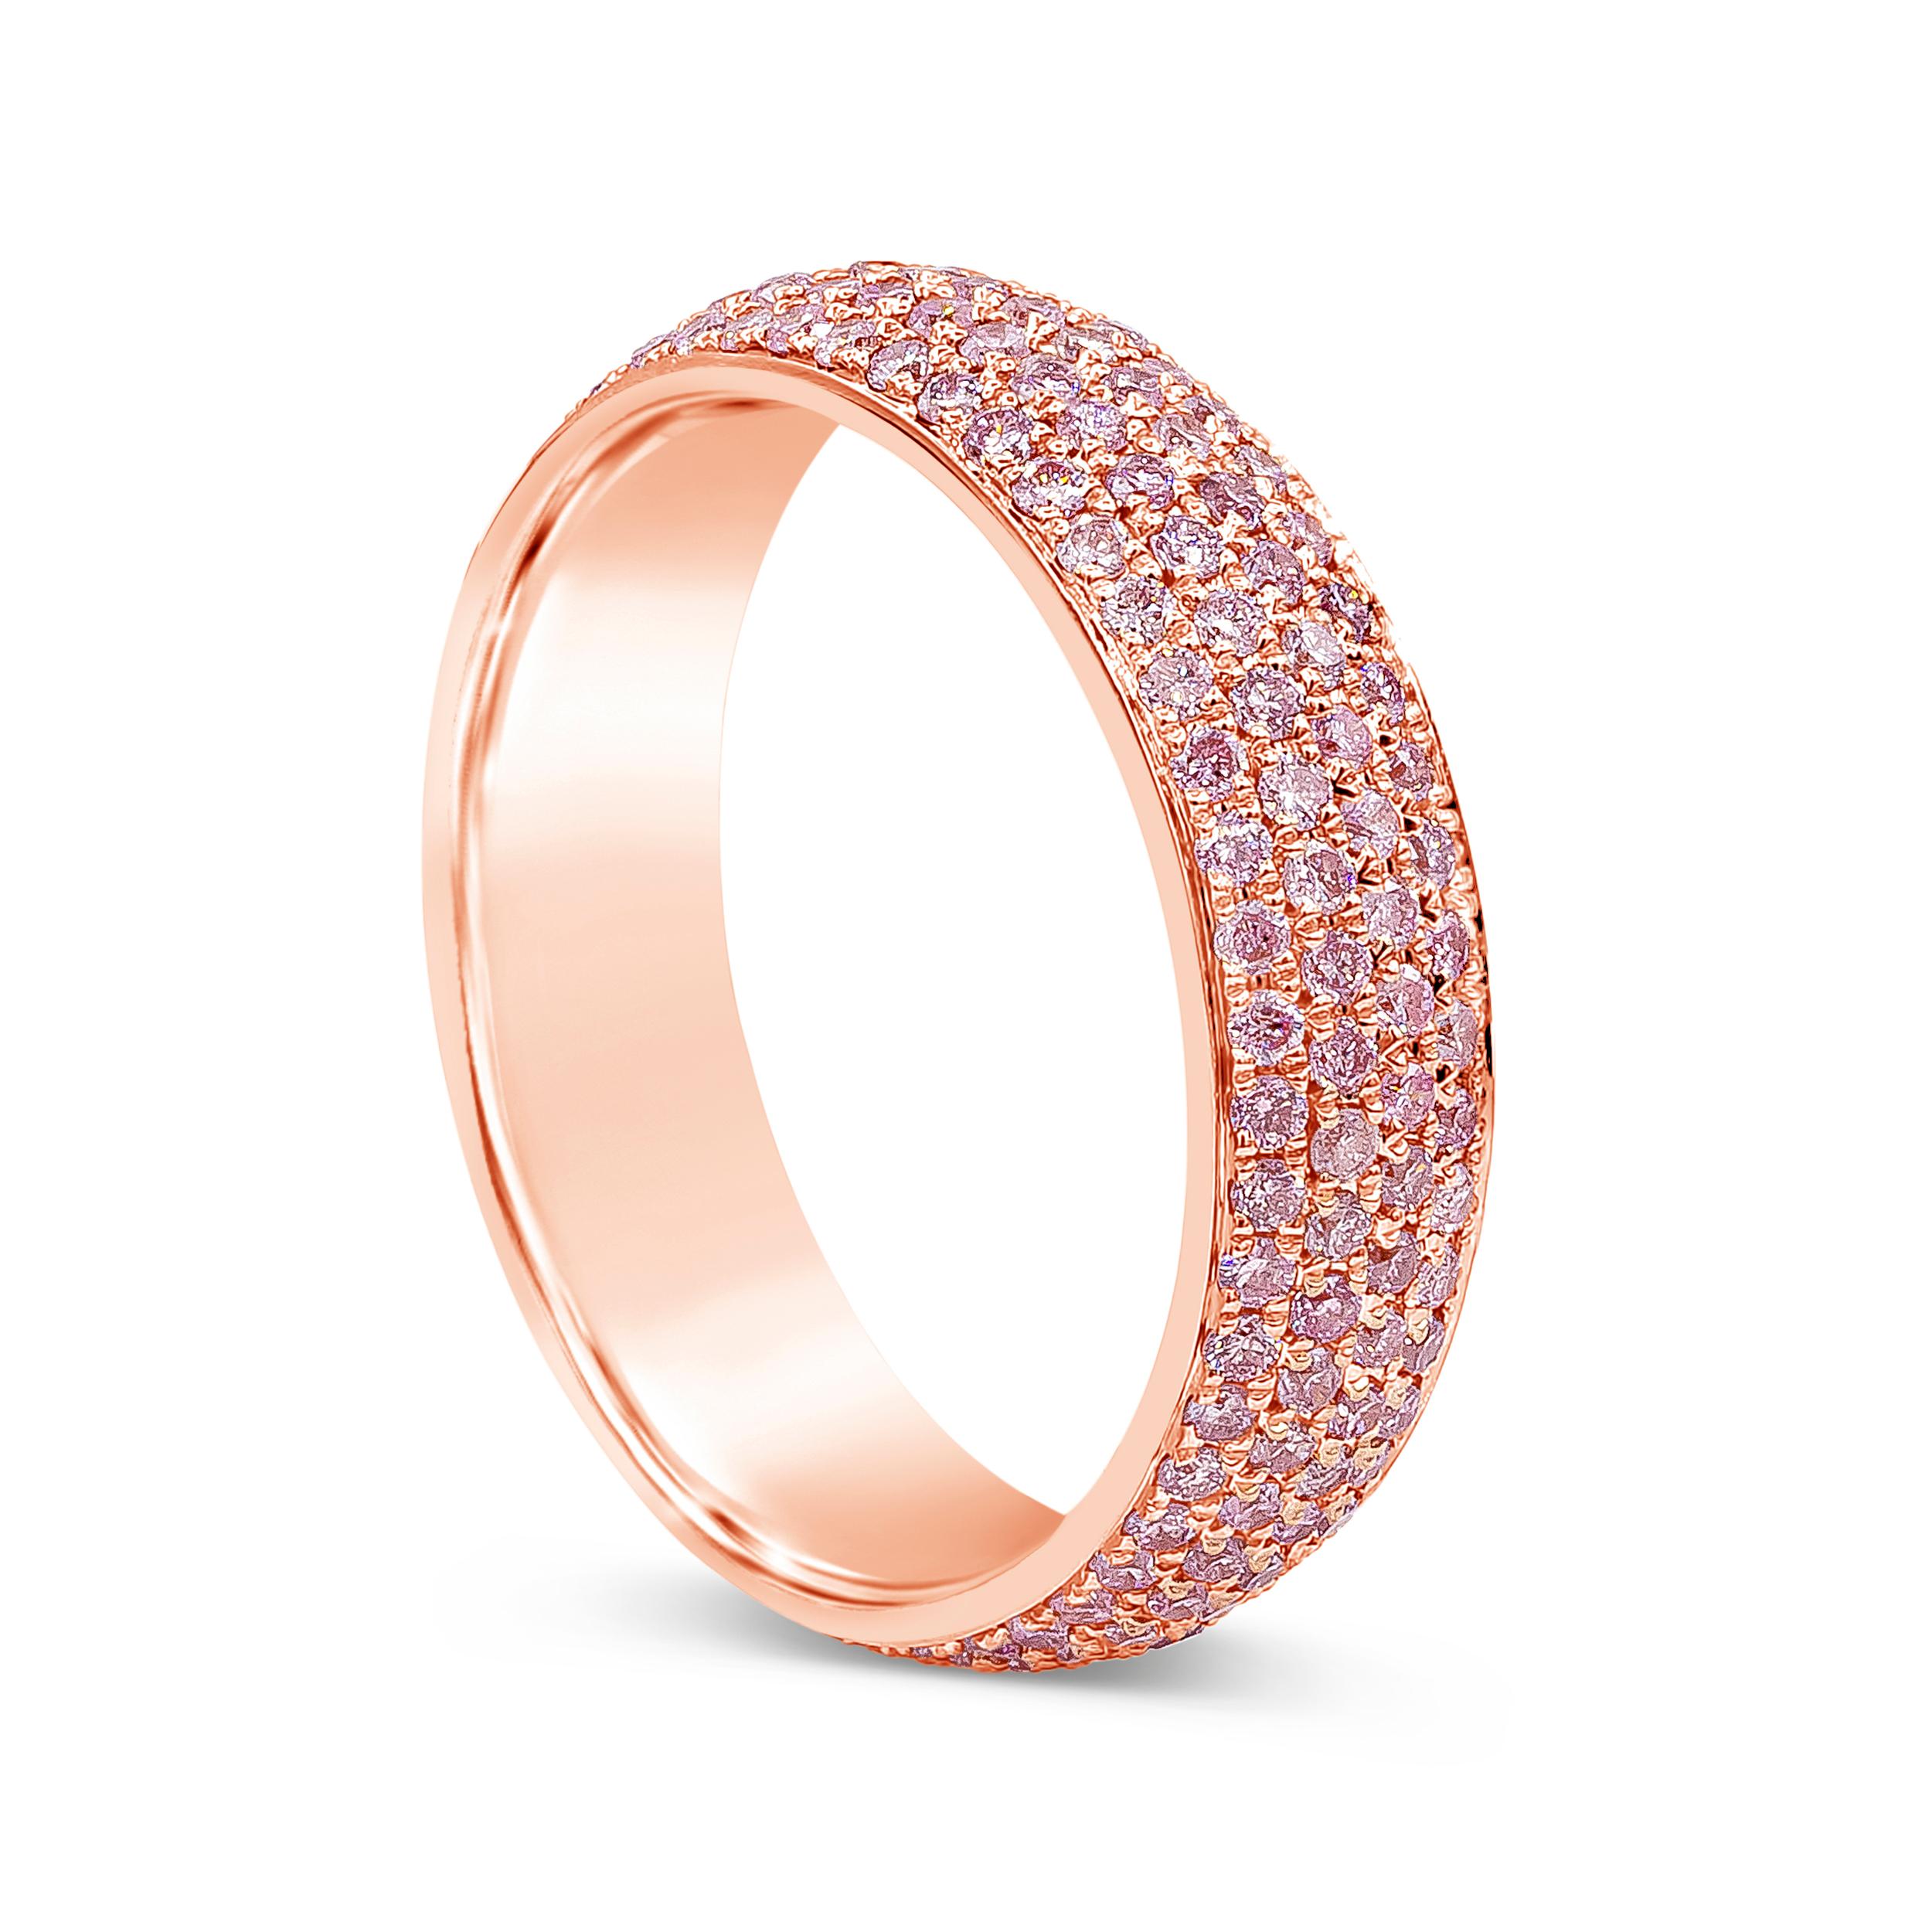 Une alliance chic et riche en couleurs mettant en valeur quatre rangées de 200 diamants roses ronds et brillants, sertis micro-pavés en or rose 18k. Les diamants pèsent 1.21 carat au total. Le bracelet, d'une largeur de 5 mm, est finement réalisé en